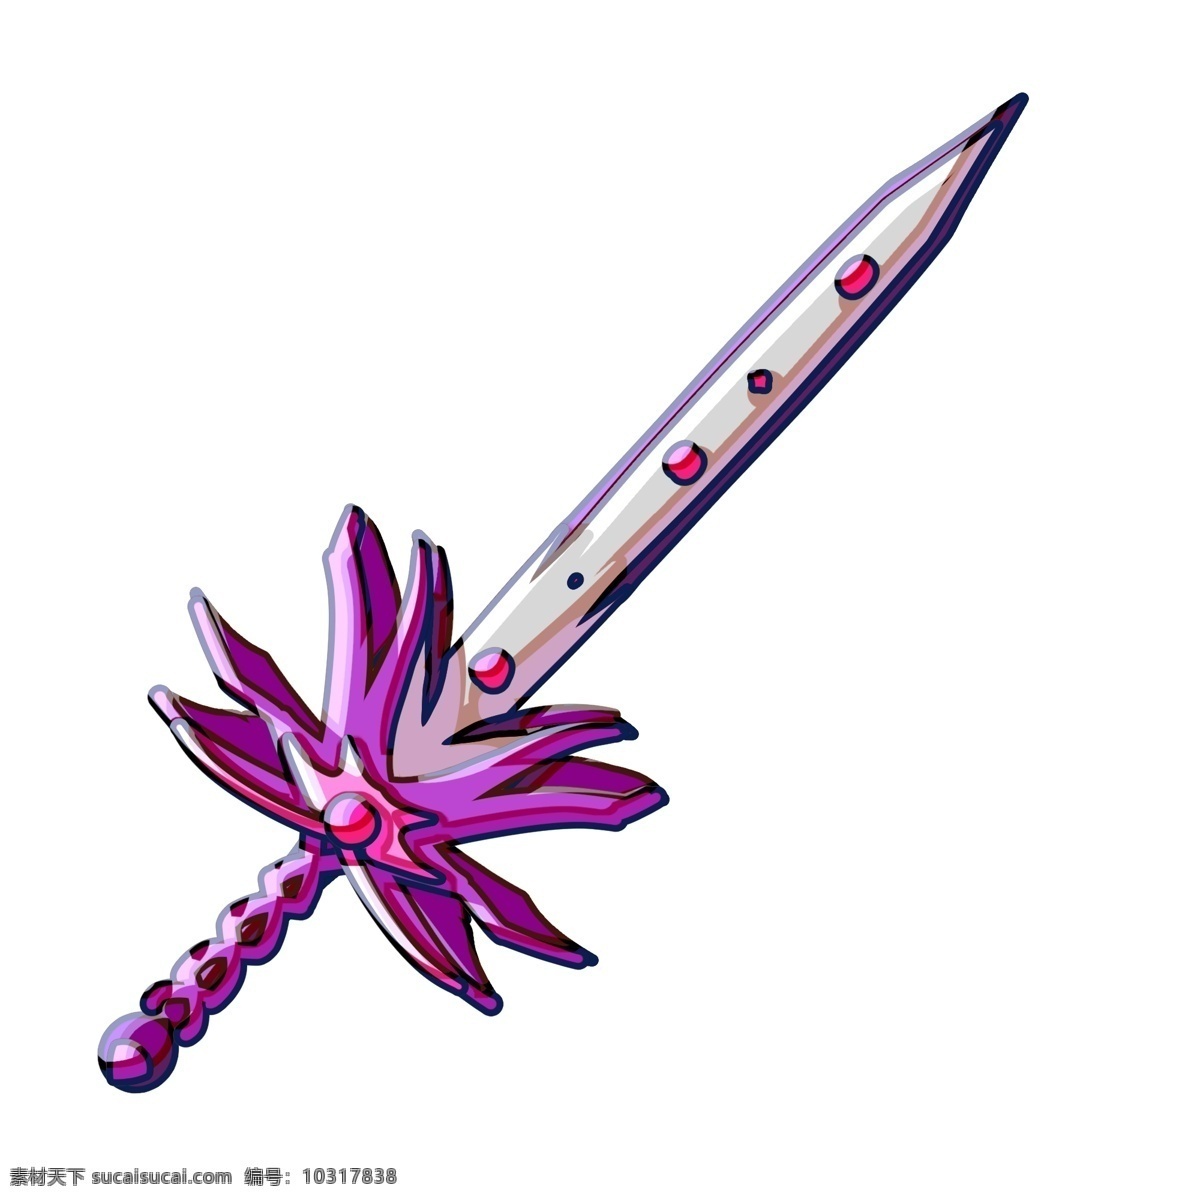 立体 宝剑 装饰 插画 立体宝剑 紫色的宝剑 漂亮的宝剑 创意宝剑 卡通宝剑 宝剑装饰